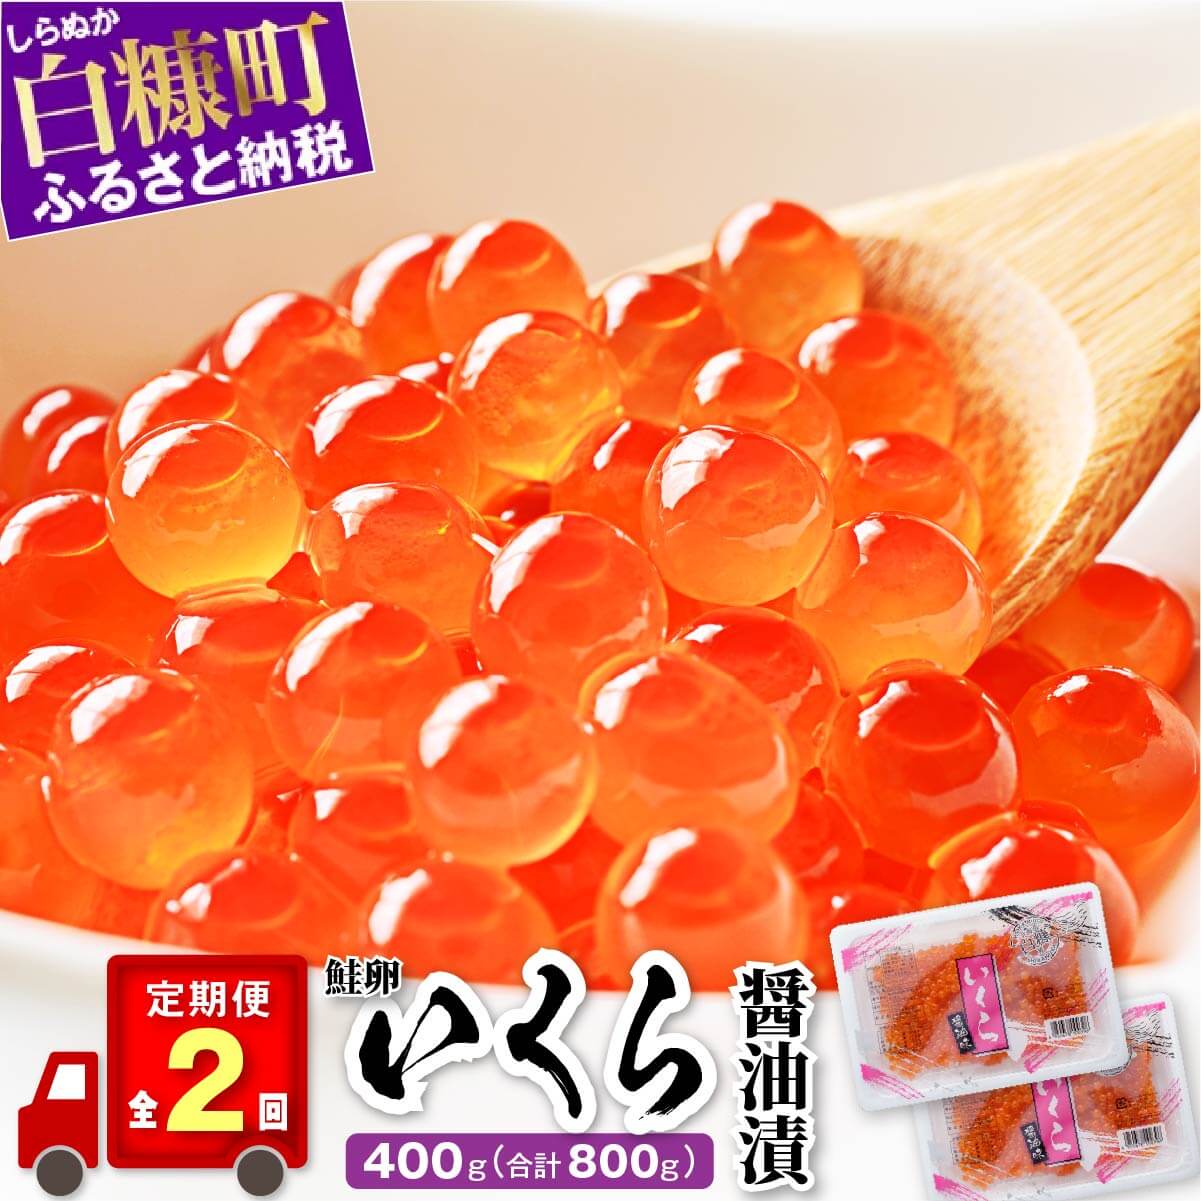 【定期便】 いくら醤油漬 (鮭卵) 400g (200g×2) ×2回